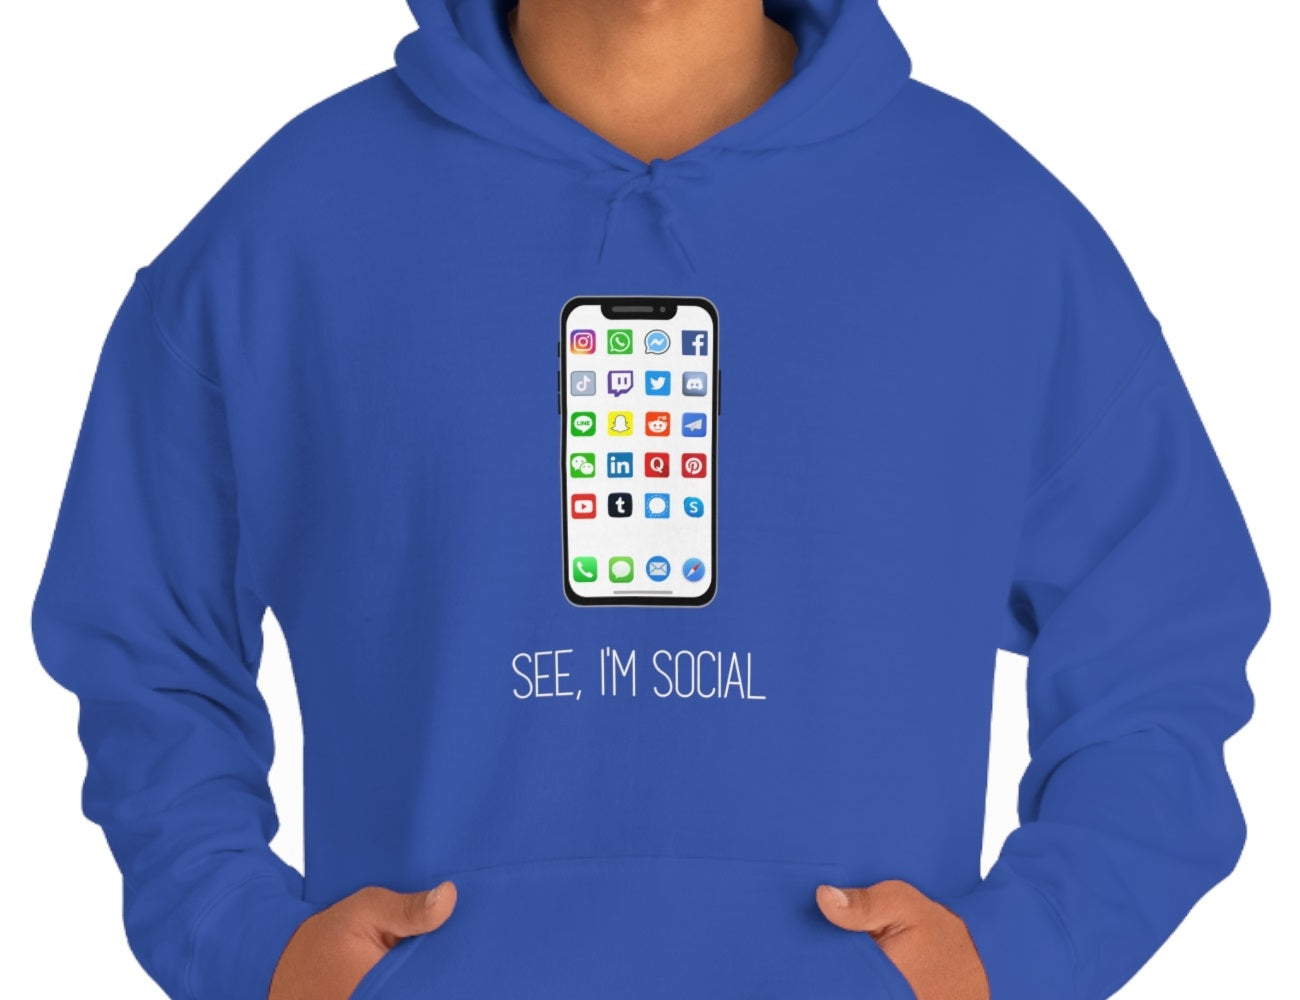 "See, I'm Social" Unisex Hooded Sweatshirt